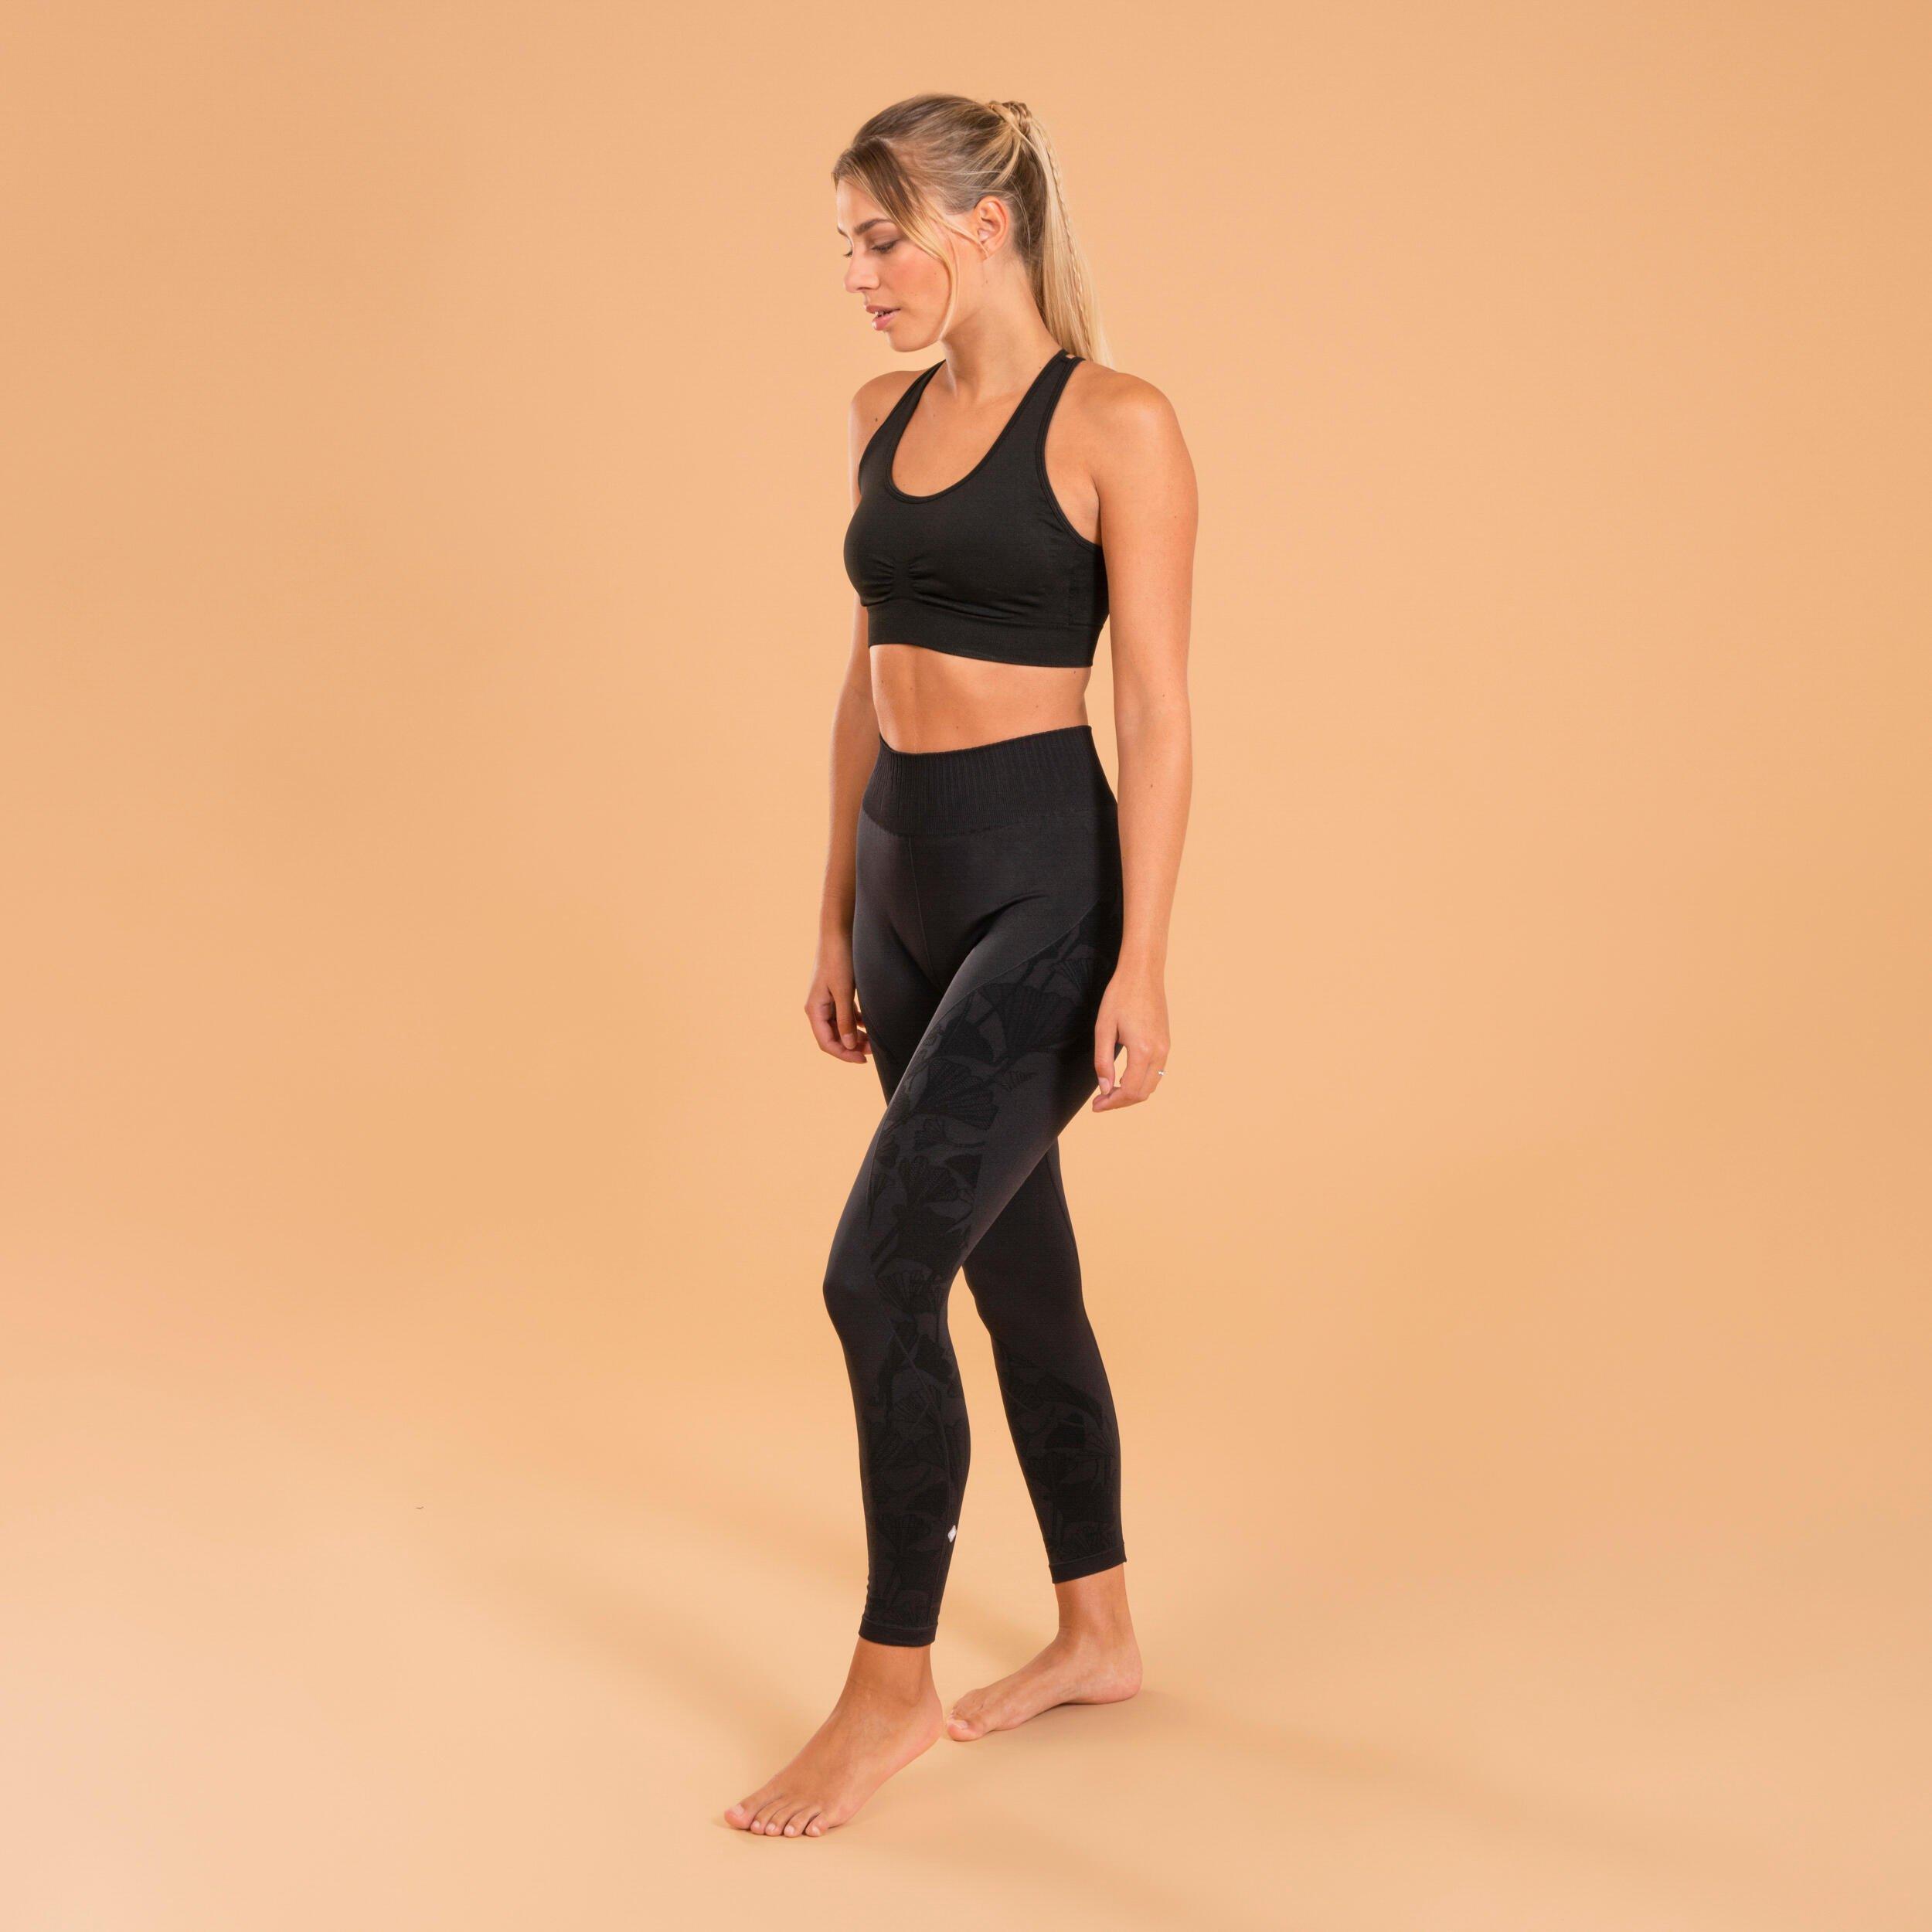 Decathlon - Kimjaly, Seamless 7/8 Yoga Leggings, Women's 